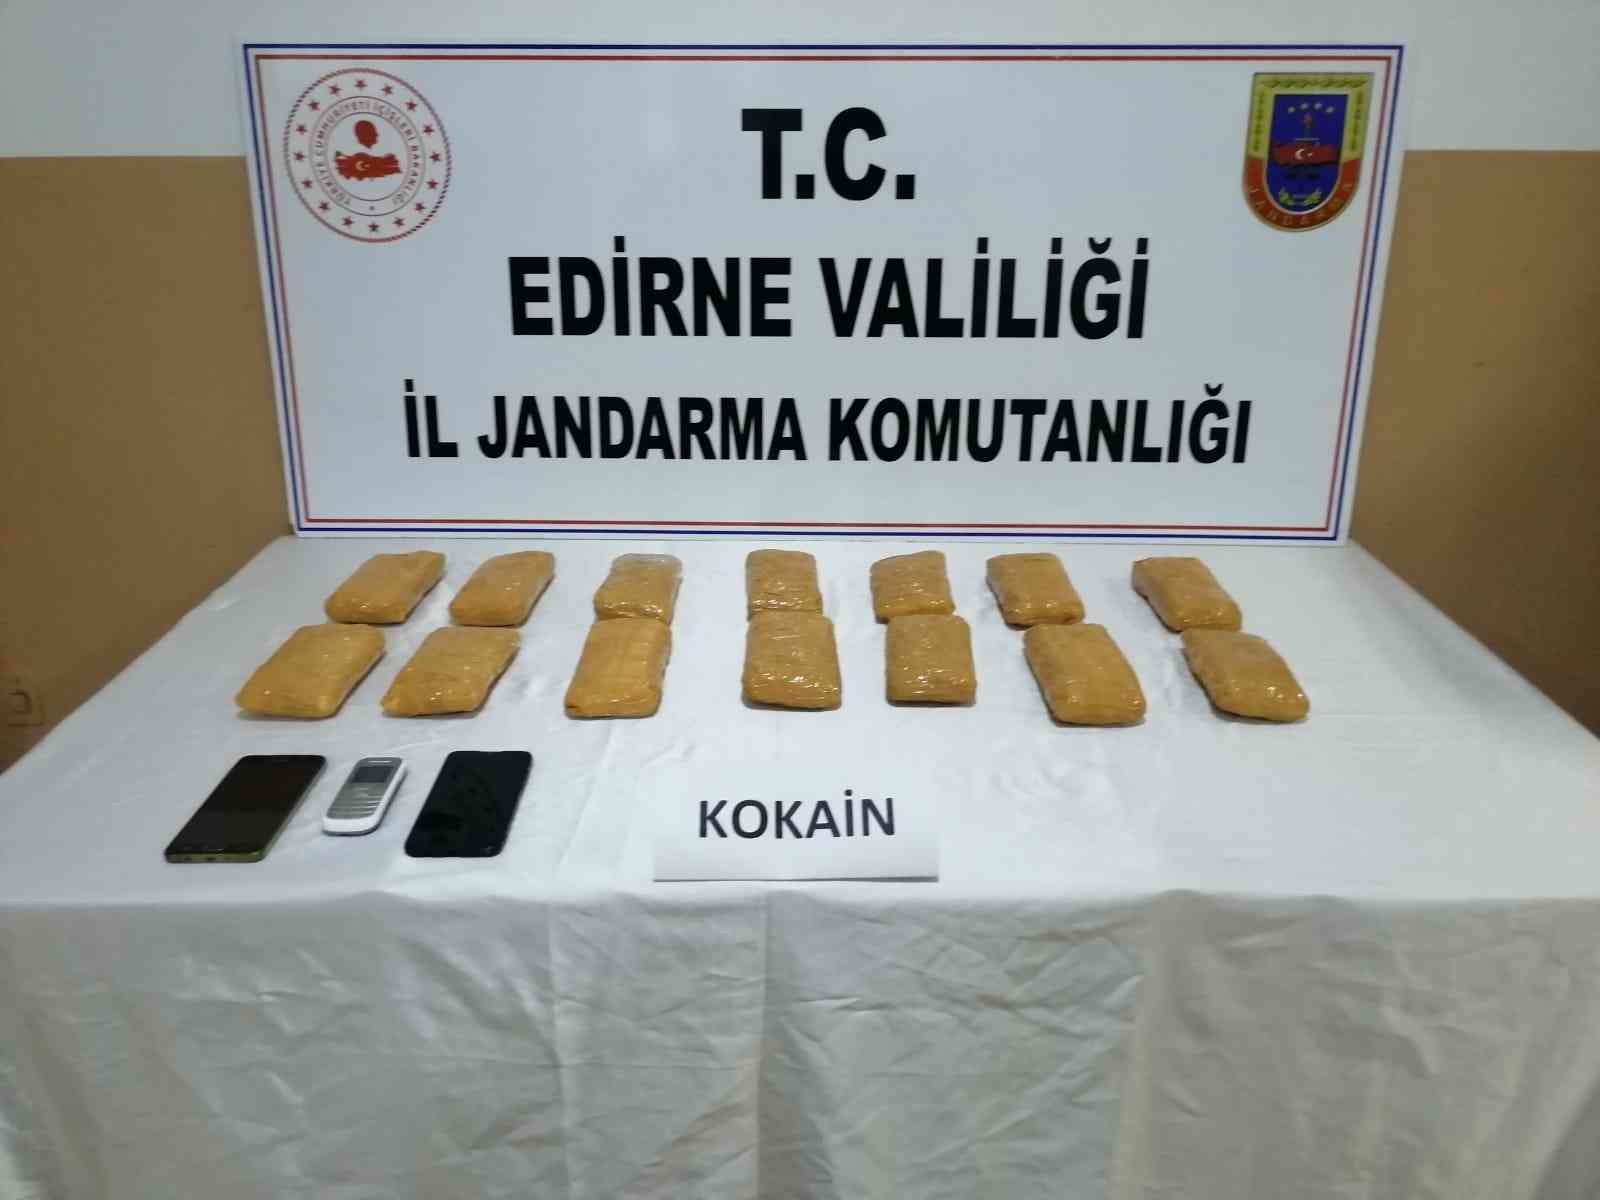 Edirne’de 7 Kilo Kokain Ele Geçirildi